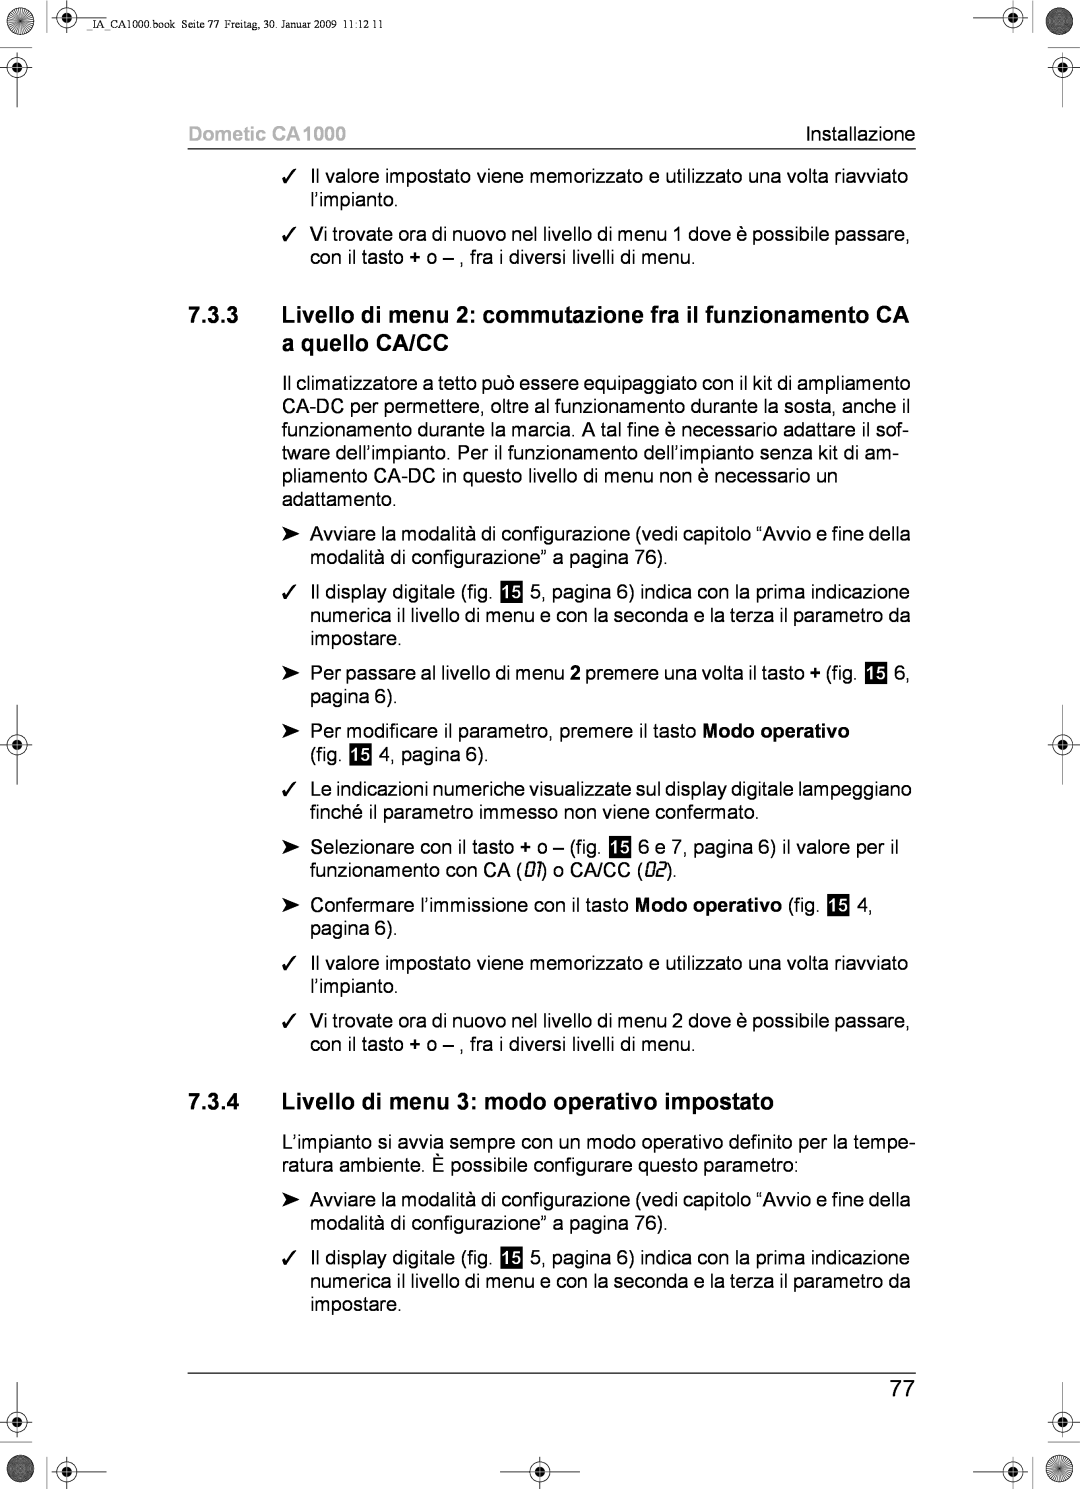 Dometic installation manual 7.3.4Livello di menu 3: modo operativo impostato, Dometic CA1000 